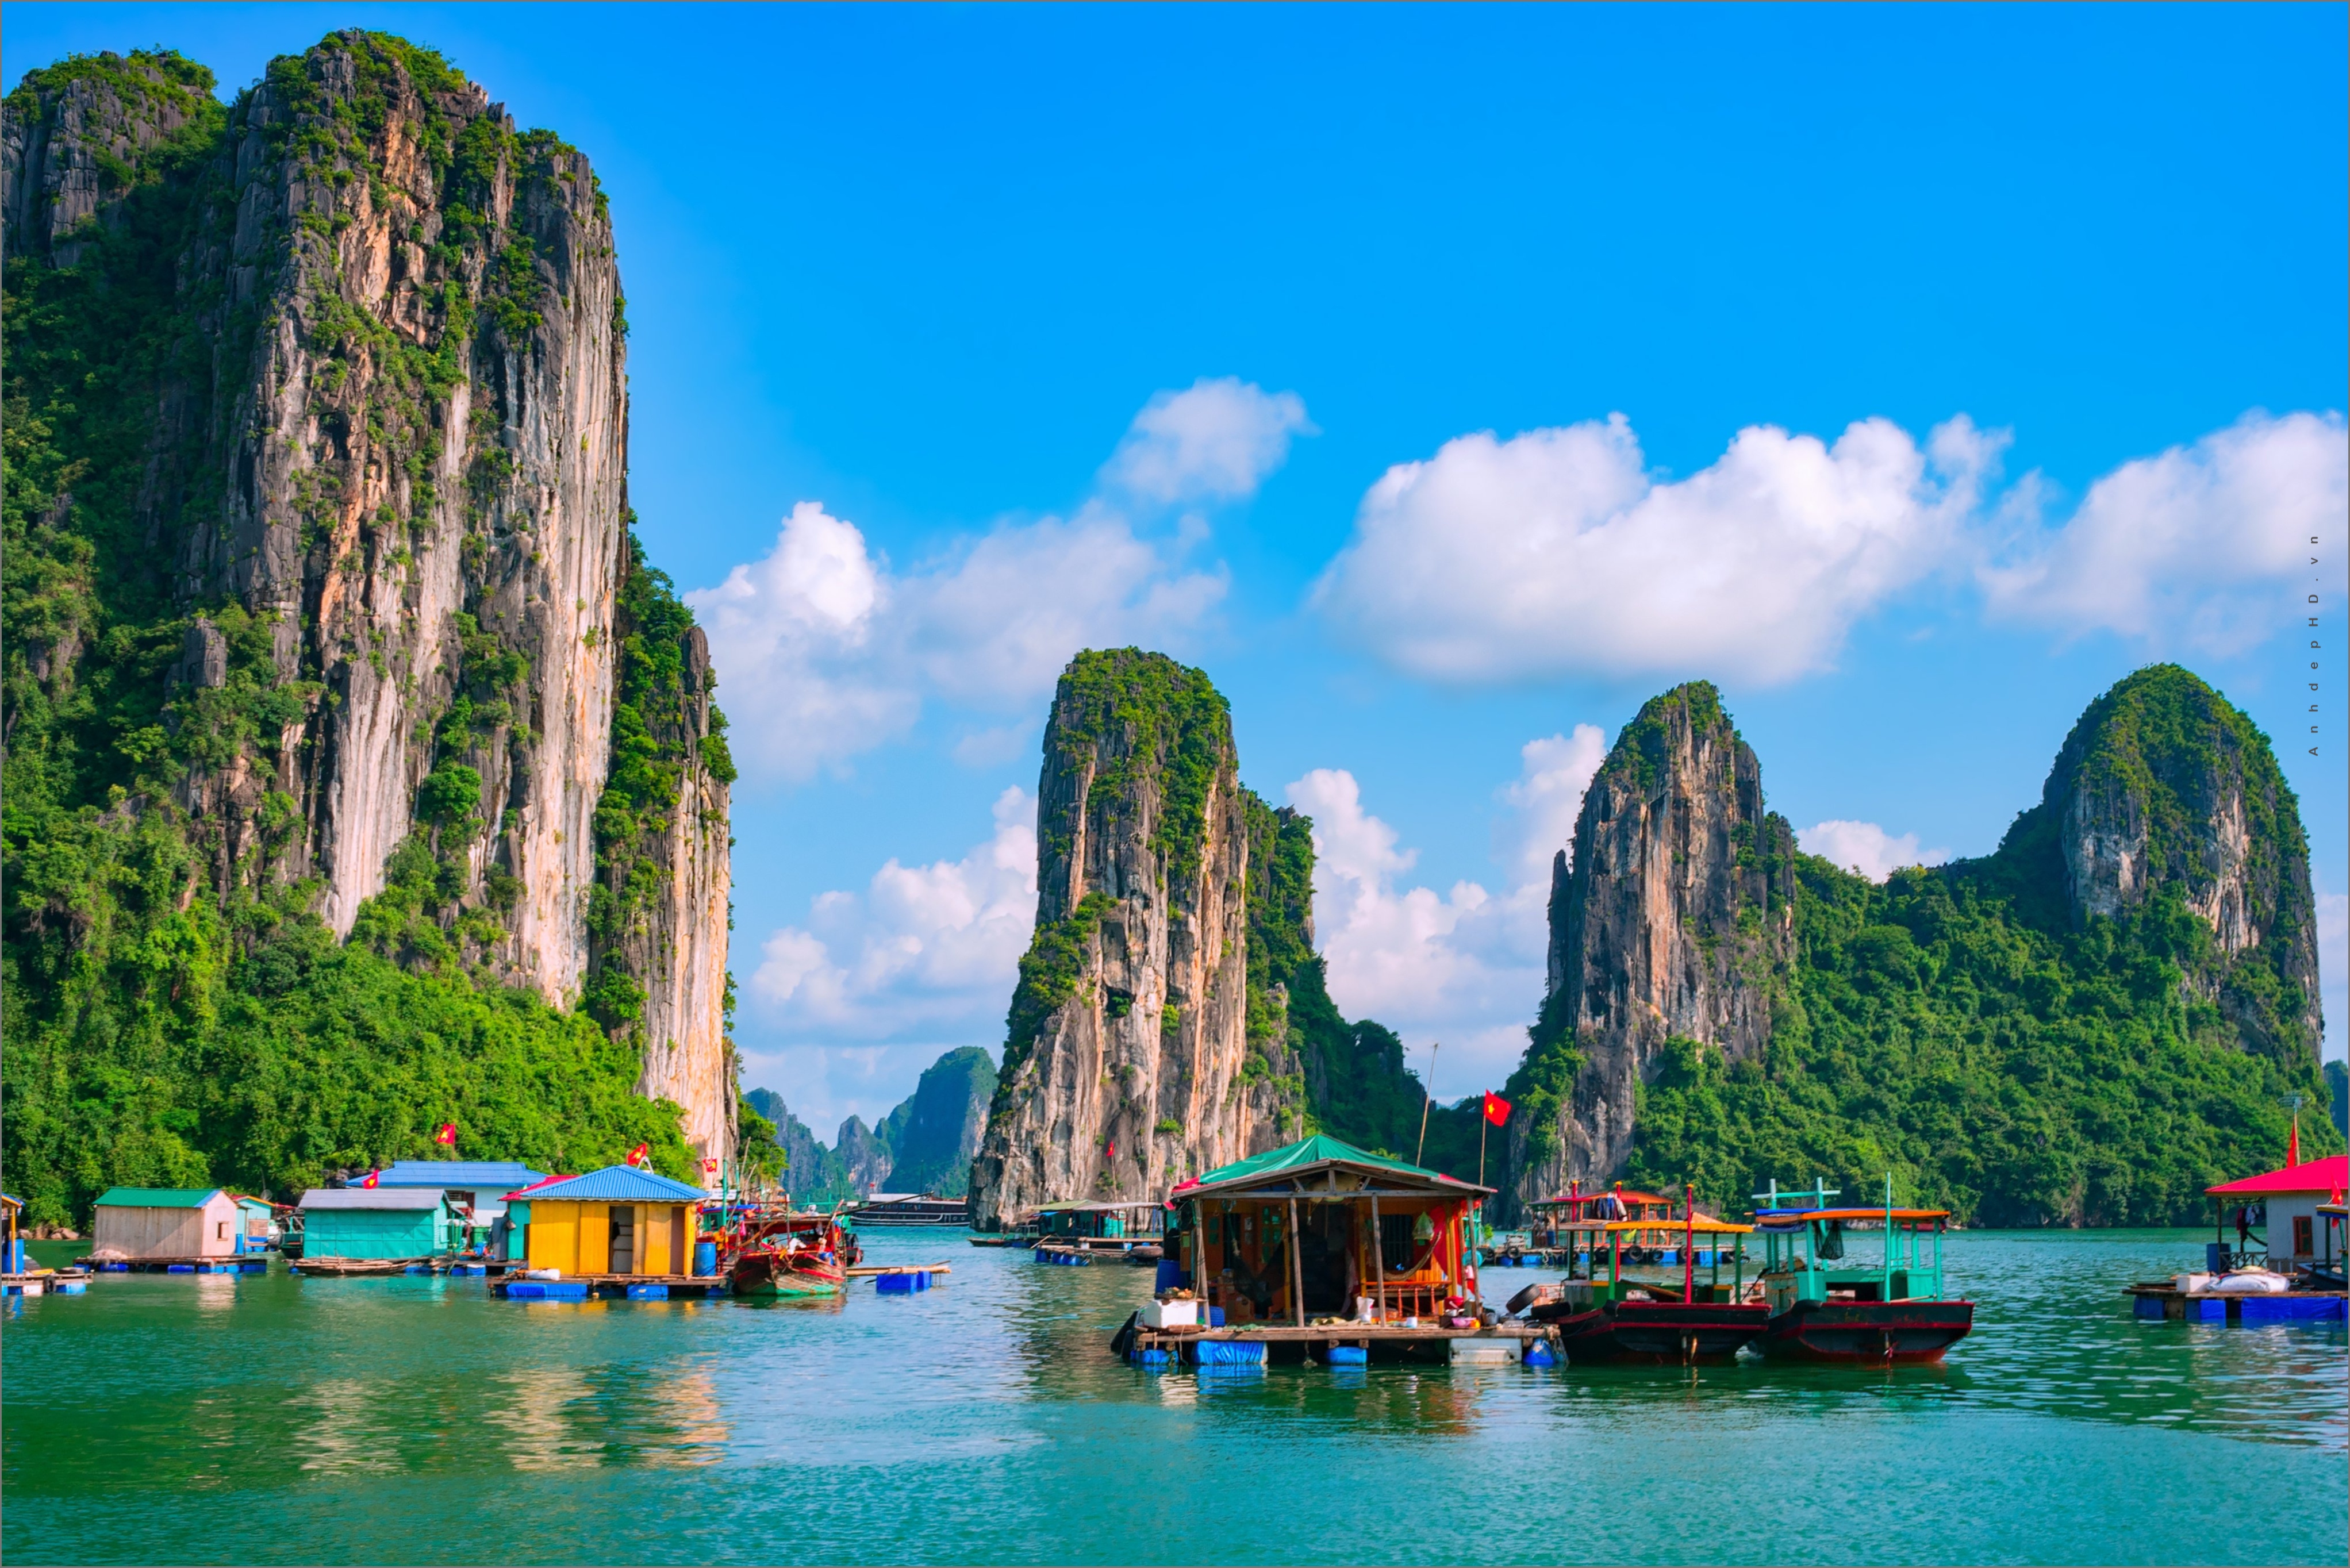 Những hình ảnh tuyệt đẹp về phong cảnh, thiên nhiên Việt Nam